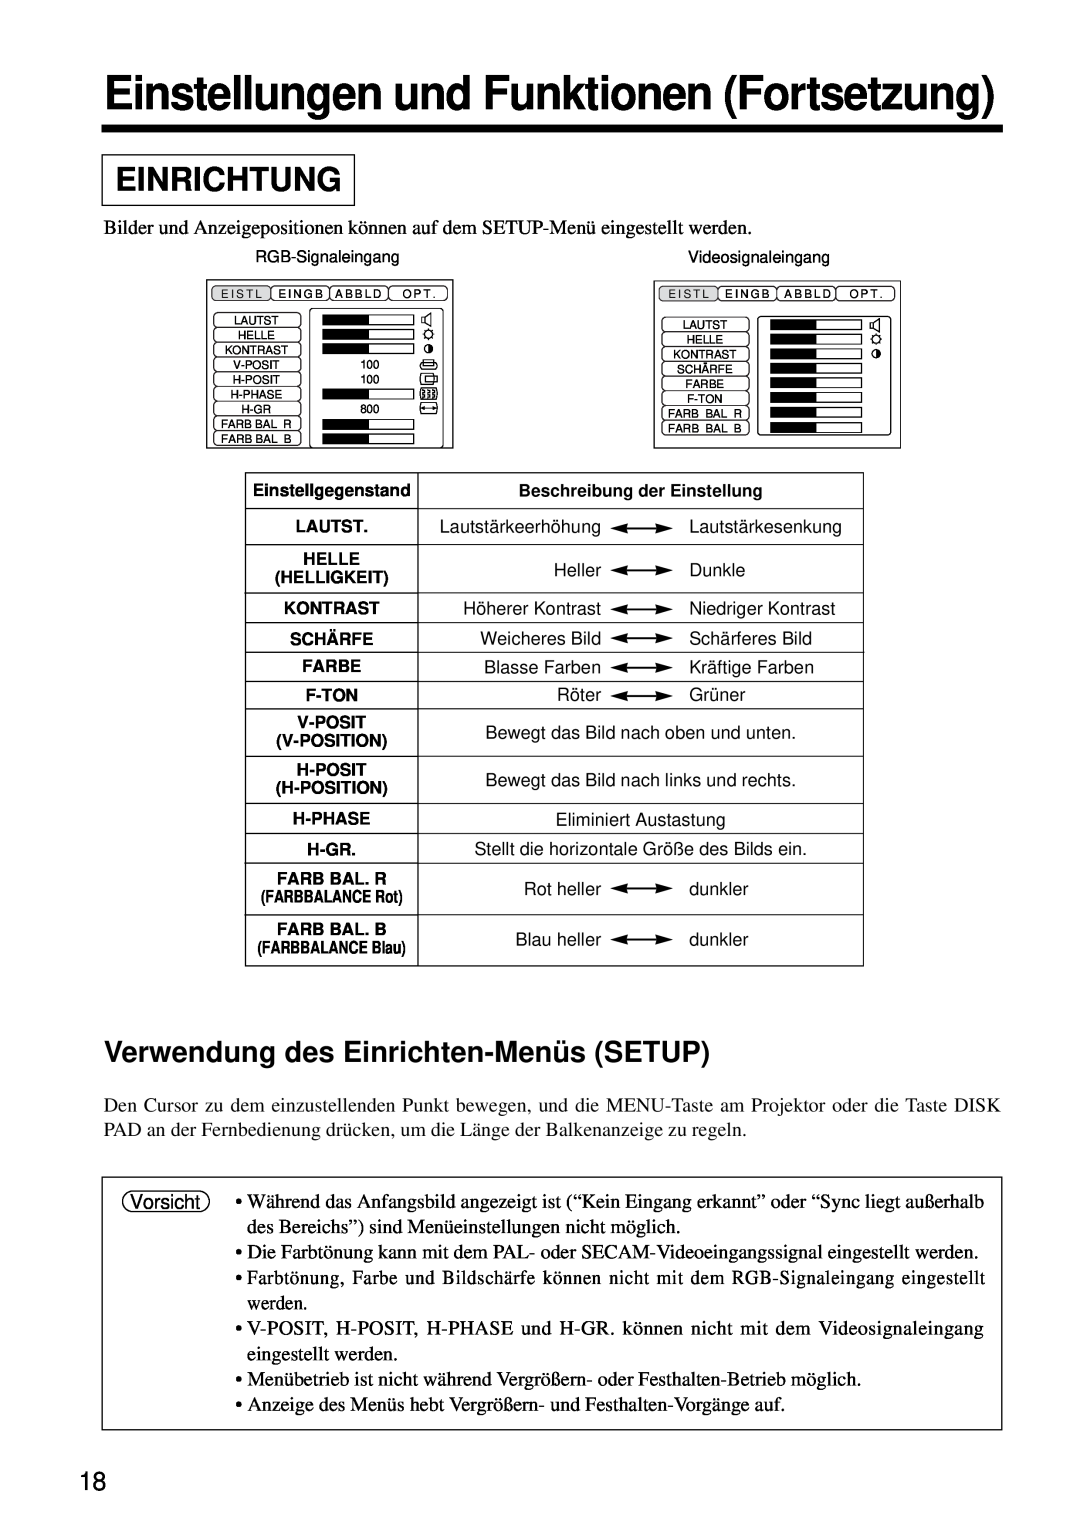 Hitachi CP-S860W user manual Einstellungen und Funktionen Fortsetzung, Einrichtung, Verwendung des Einrichten-MenüsSETUP 